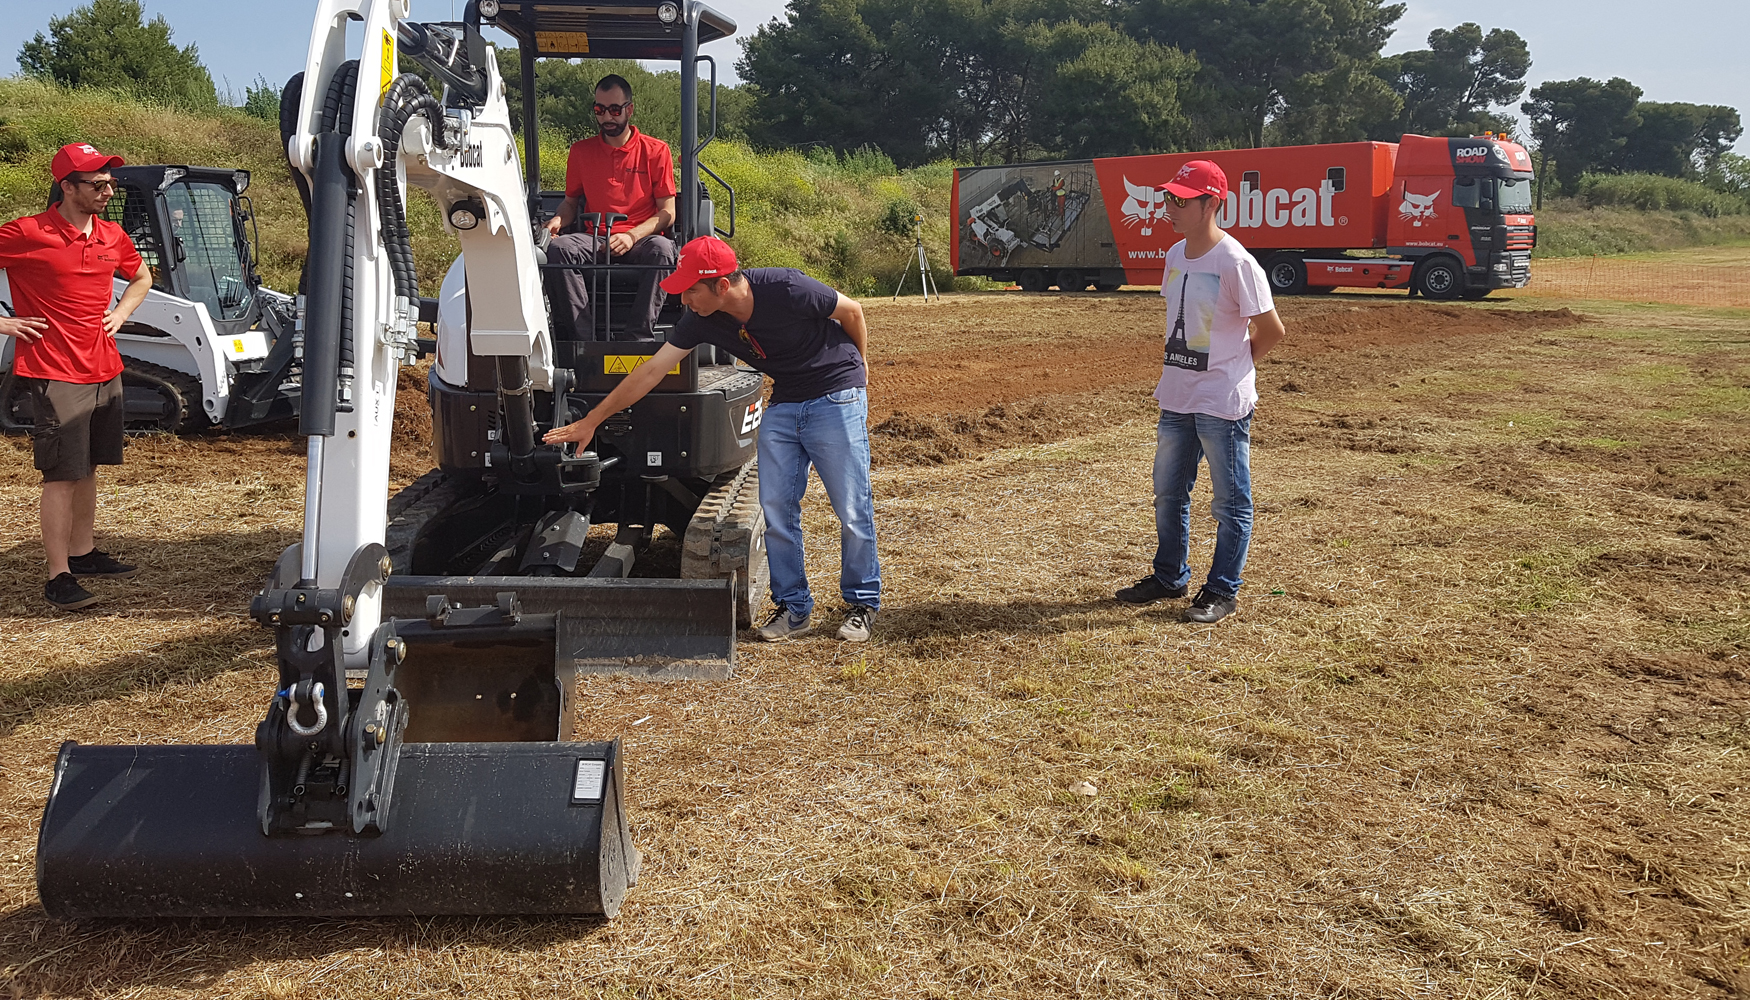 Los visitantes pudieron probar por primera vez en Espaa la nueva mini excavadora Bobcat E26